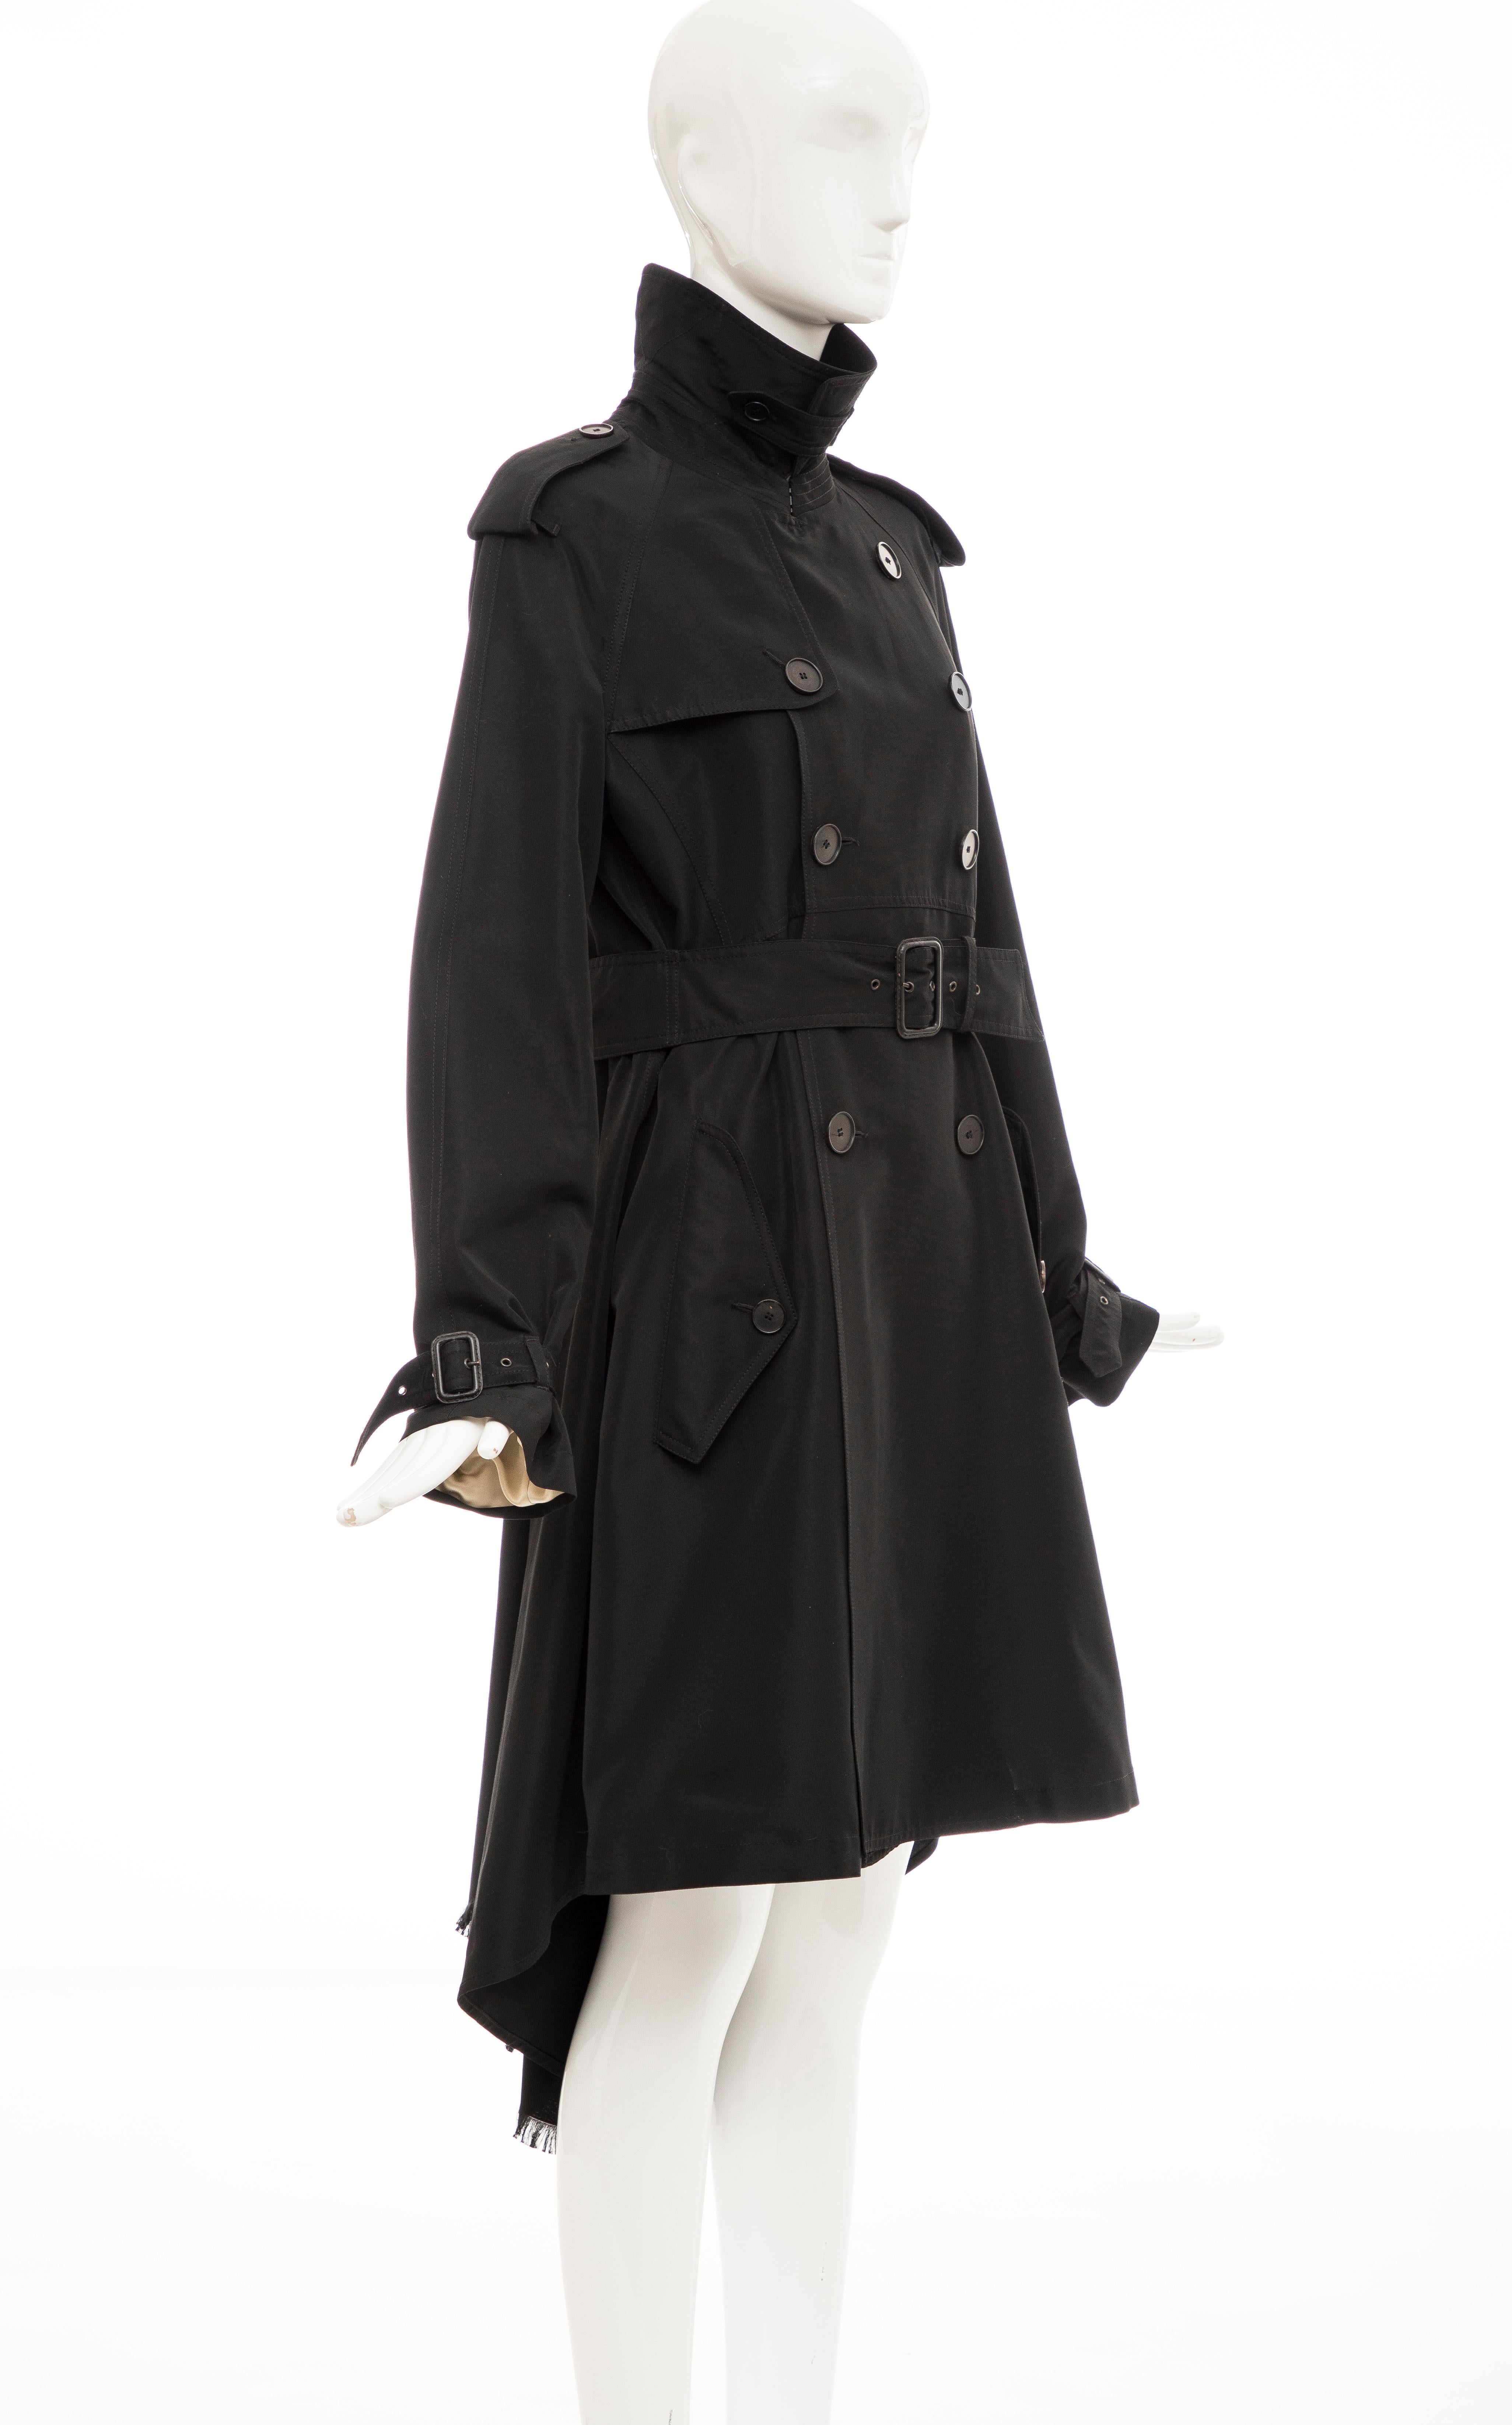 jean paul gaultier trench coat